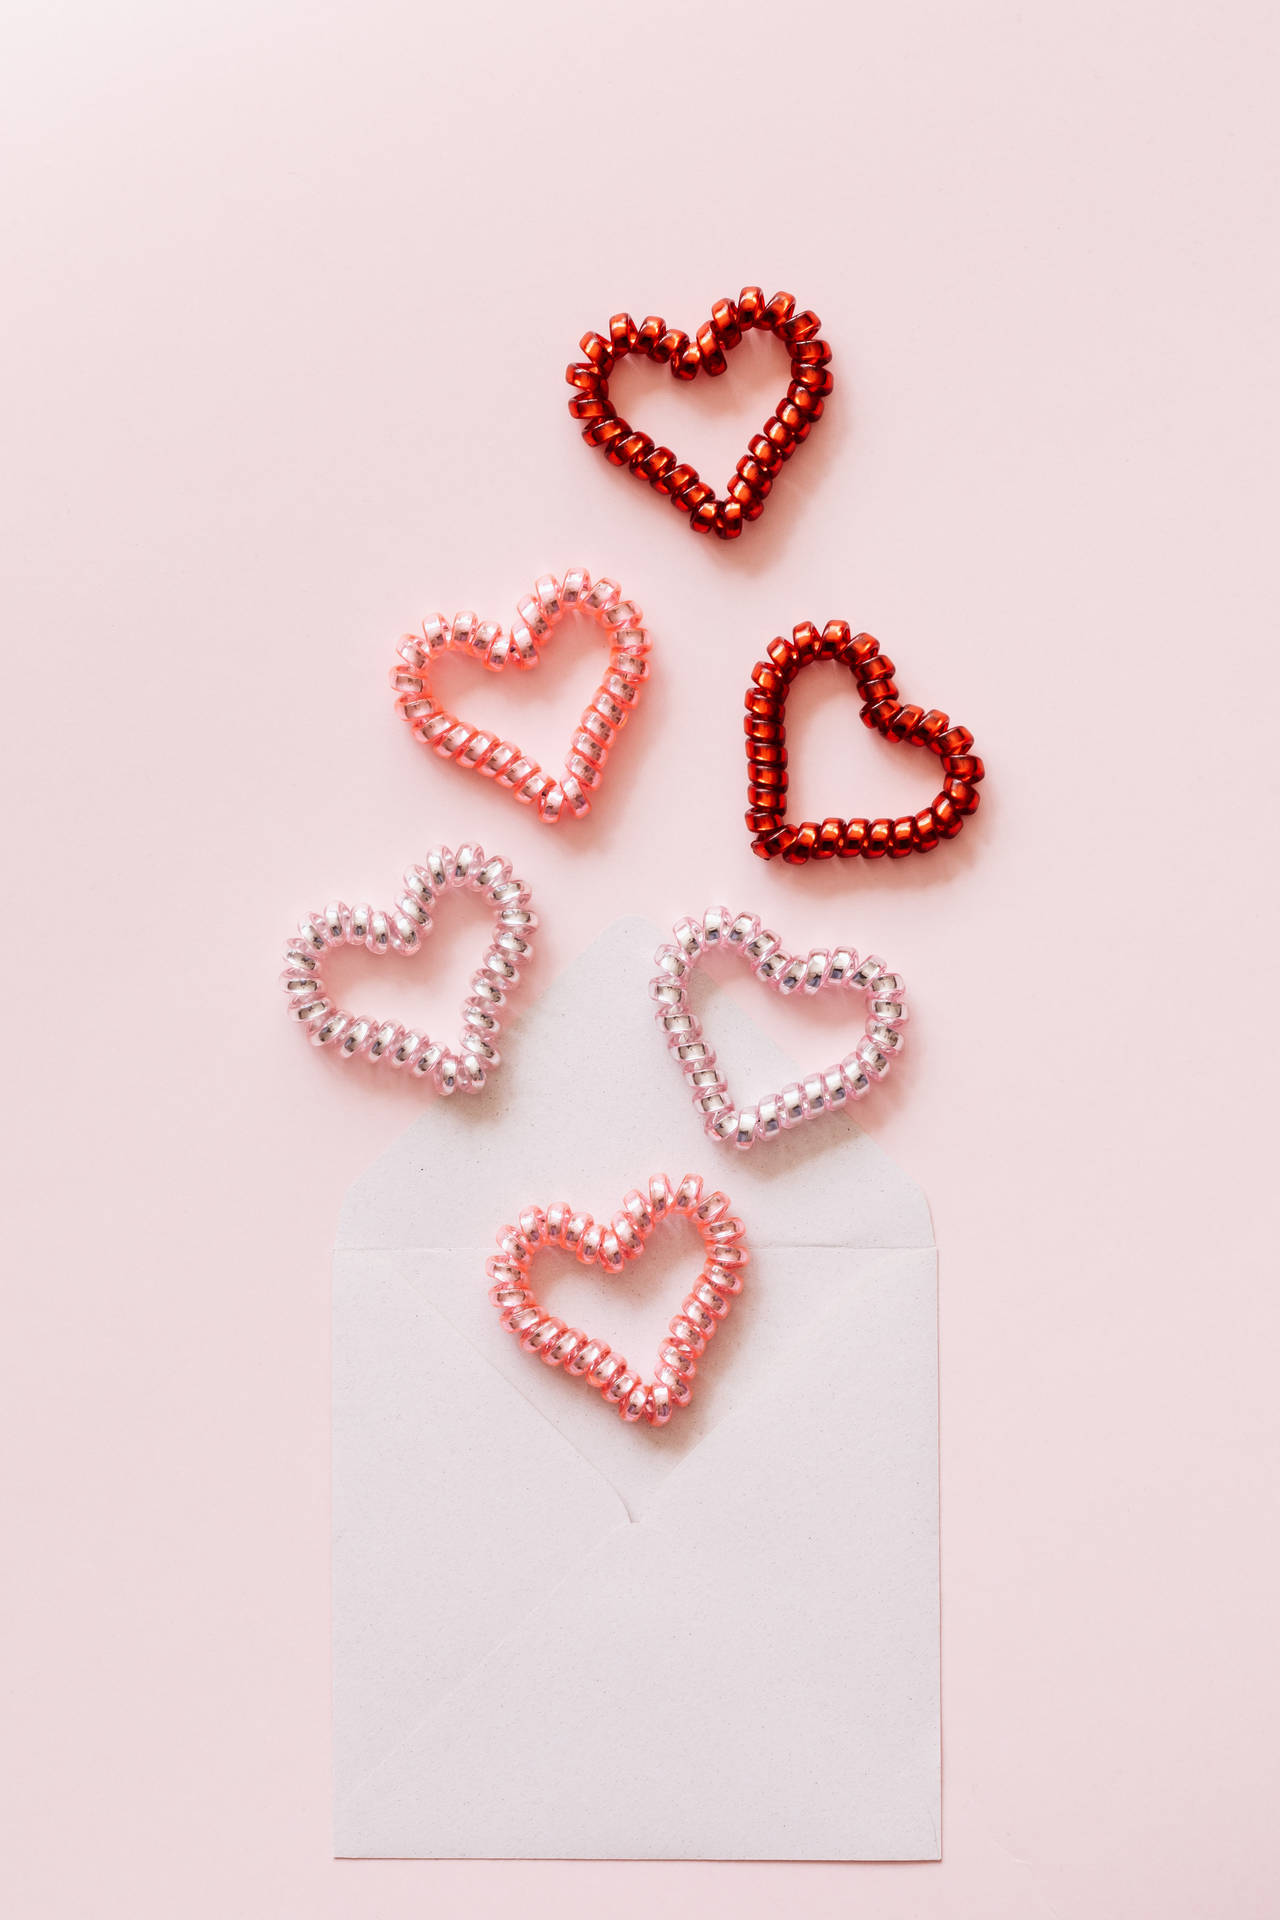 Spiralpastel Pink Heart Hair Ties = Spiral Pastellrosa Hjärta Hårband Wallpaper